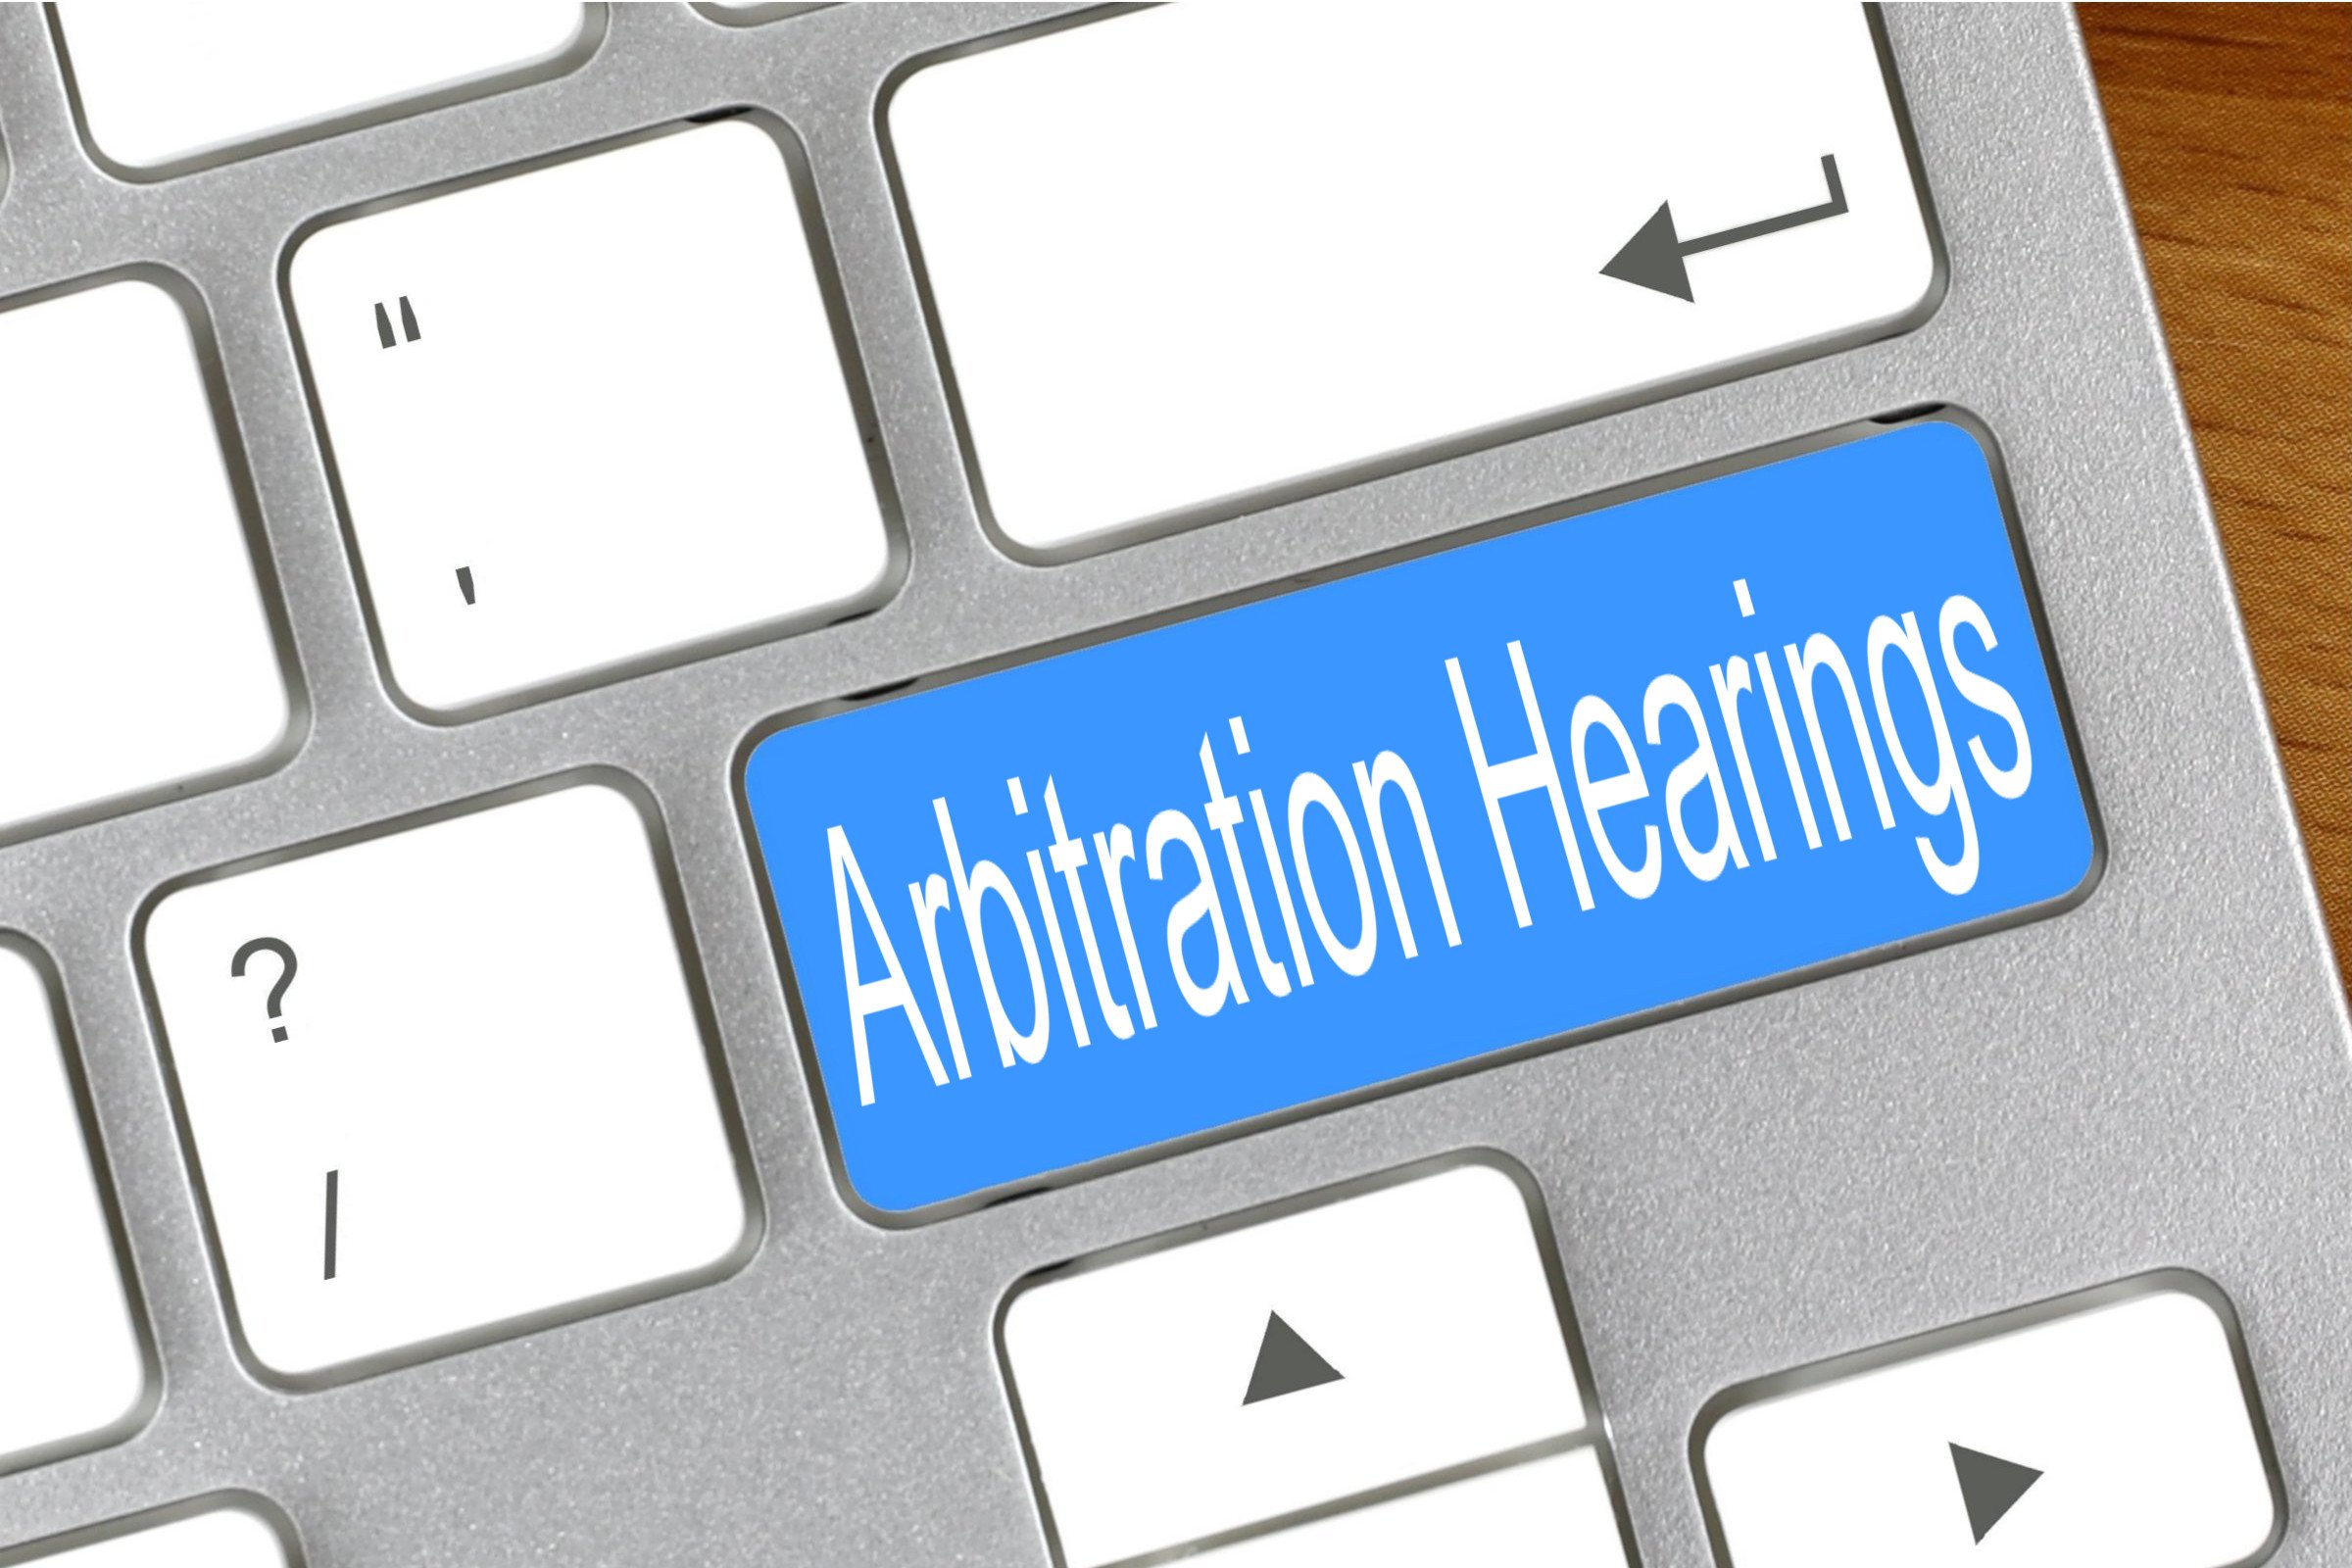 arbitration hearings